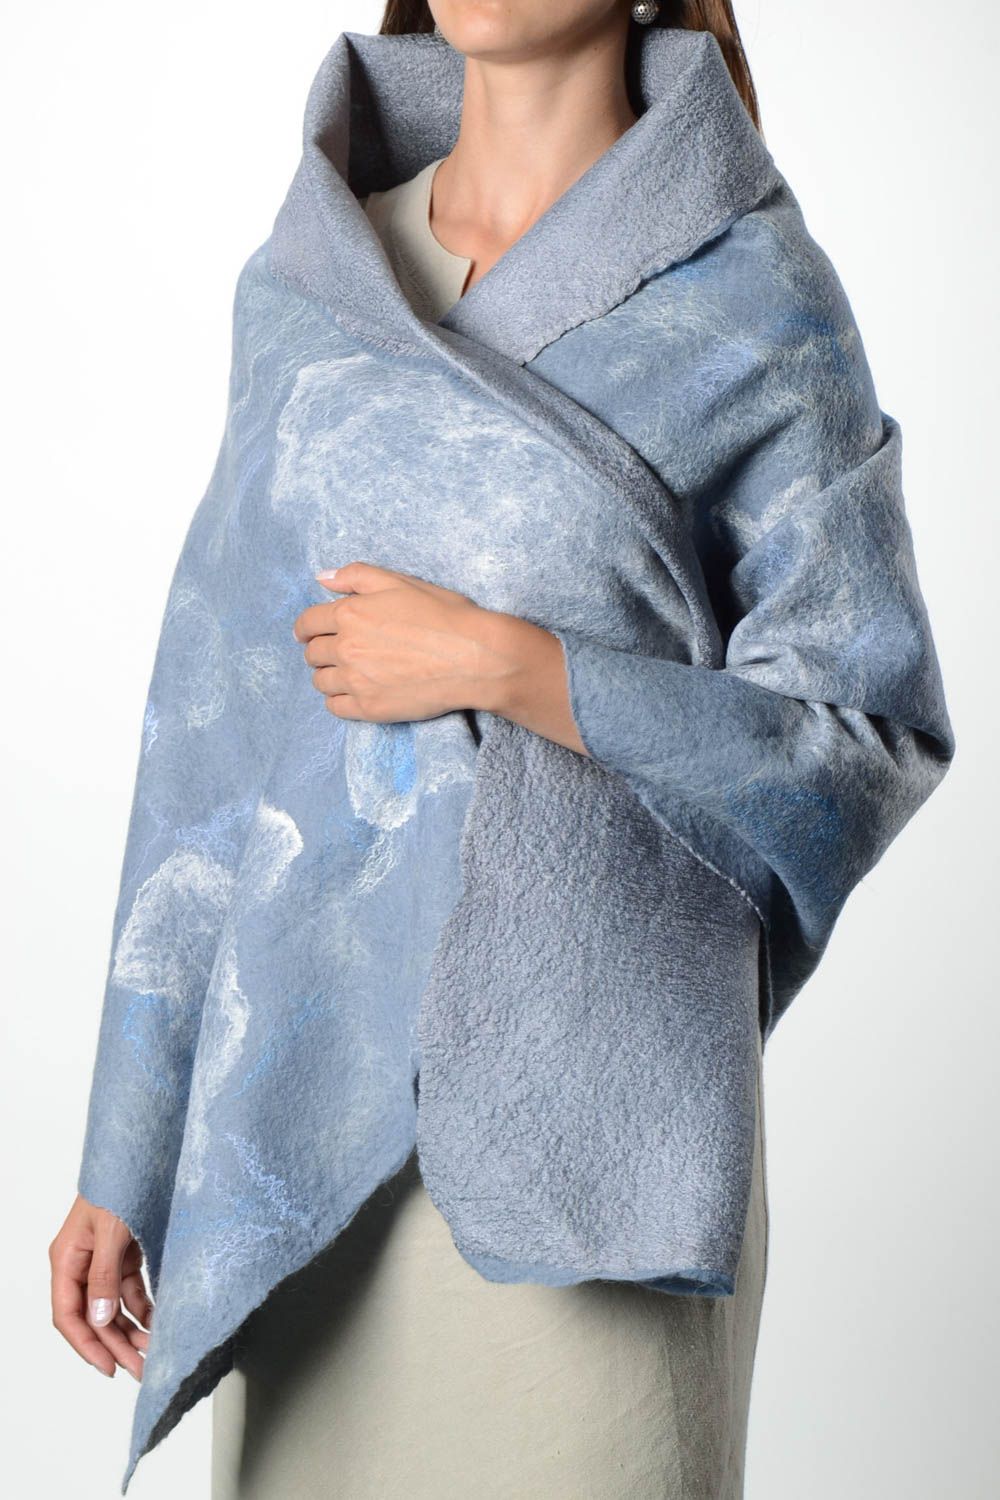 Châle femme fait main Accessoire laine bleu ciel Cadeau femme feutrage photo 1